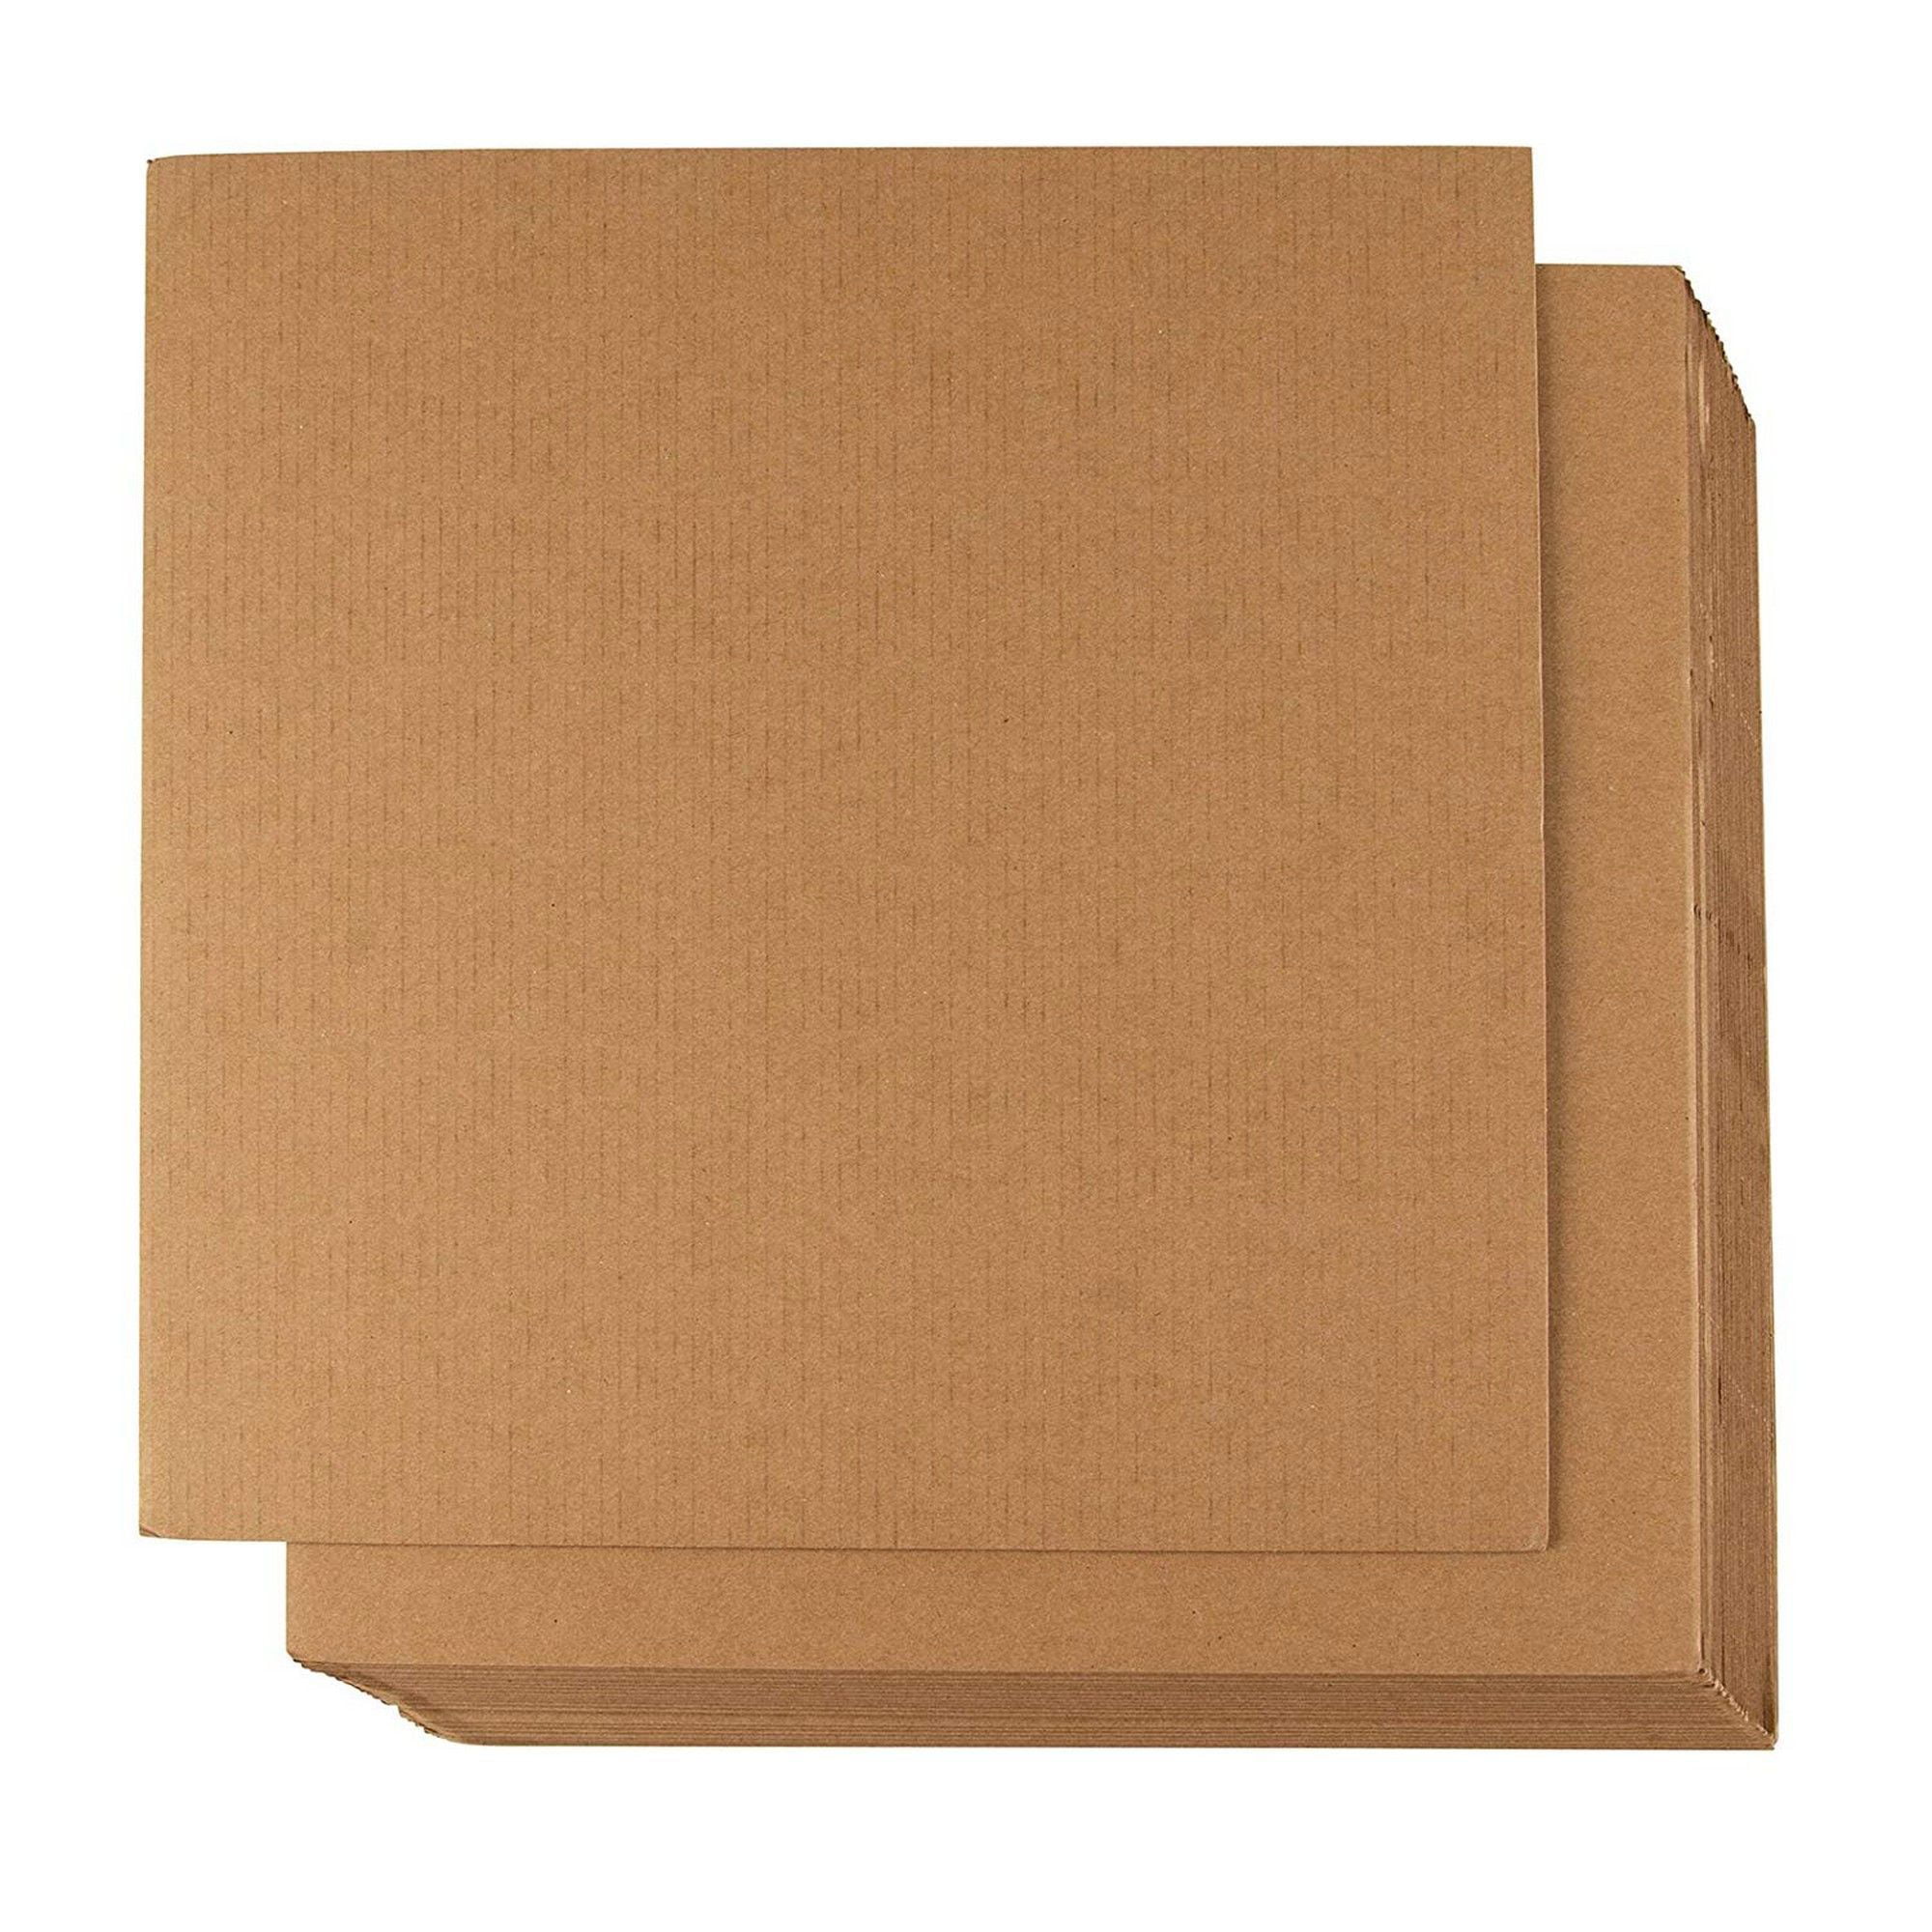 cardboard-template-material